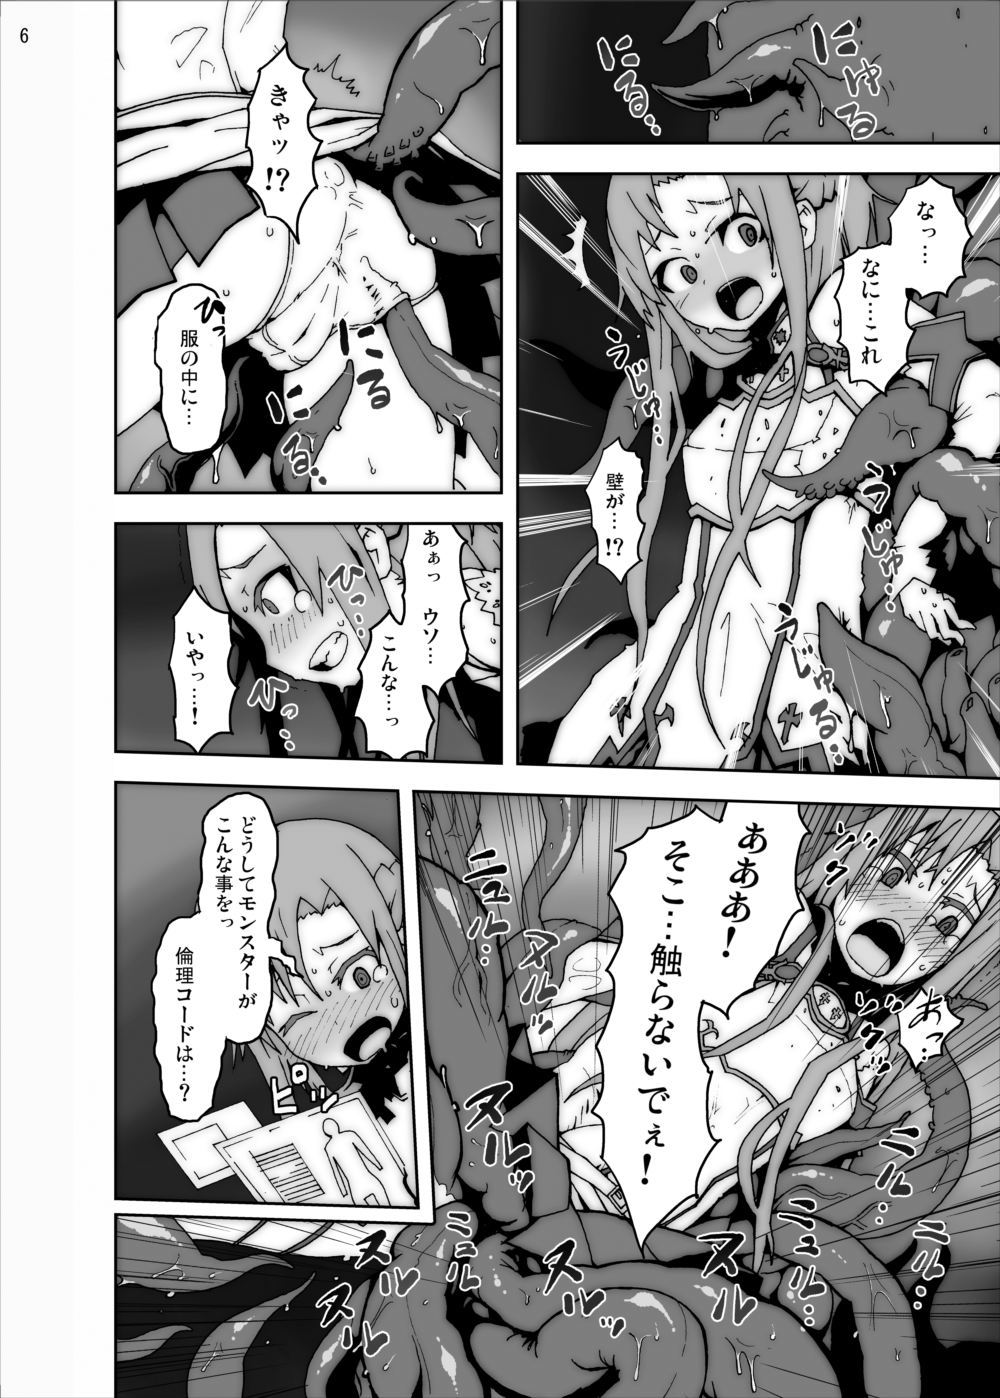 [Studio Nunchaku] Asuna in Tentacle Party Rape Online (Sword Art Online) page 5 full